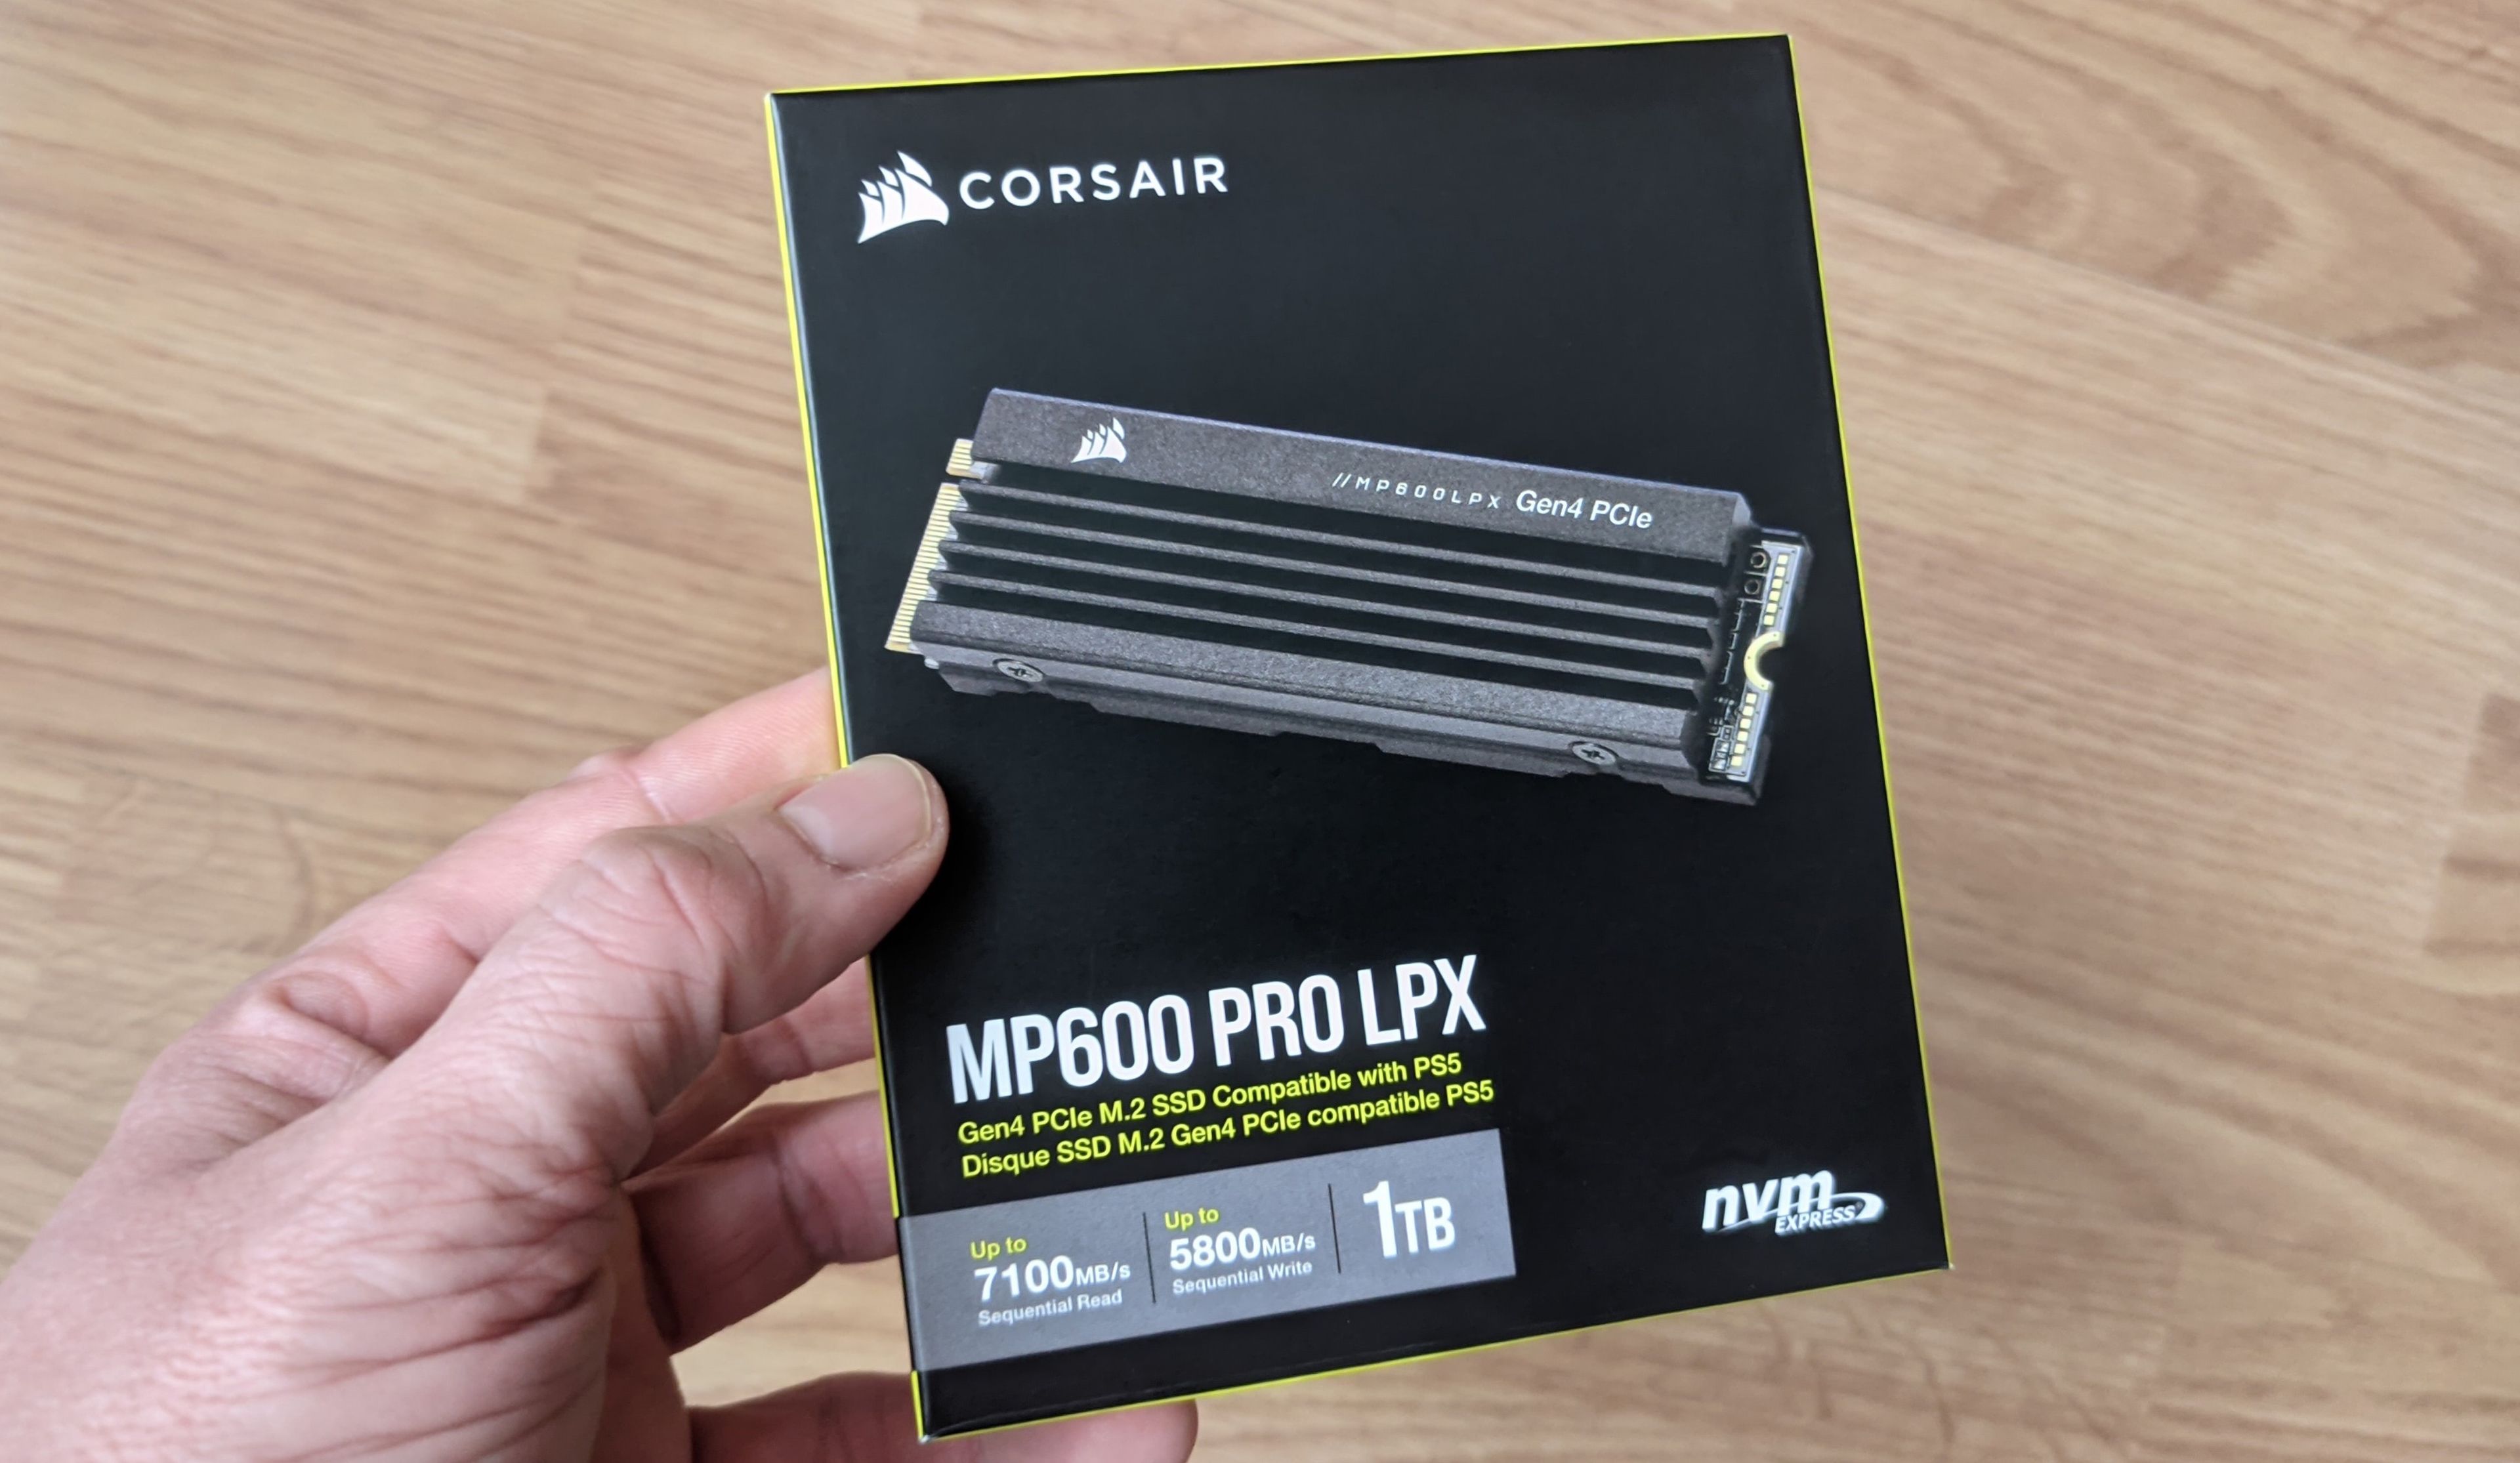 Corsair MP600 PRO LPX review on PS5